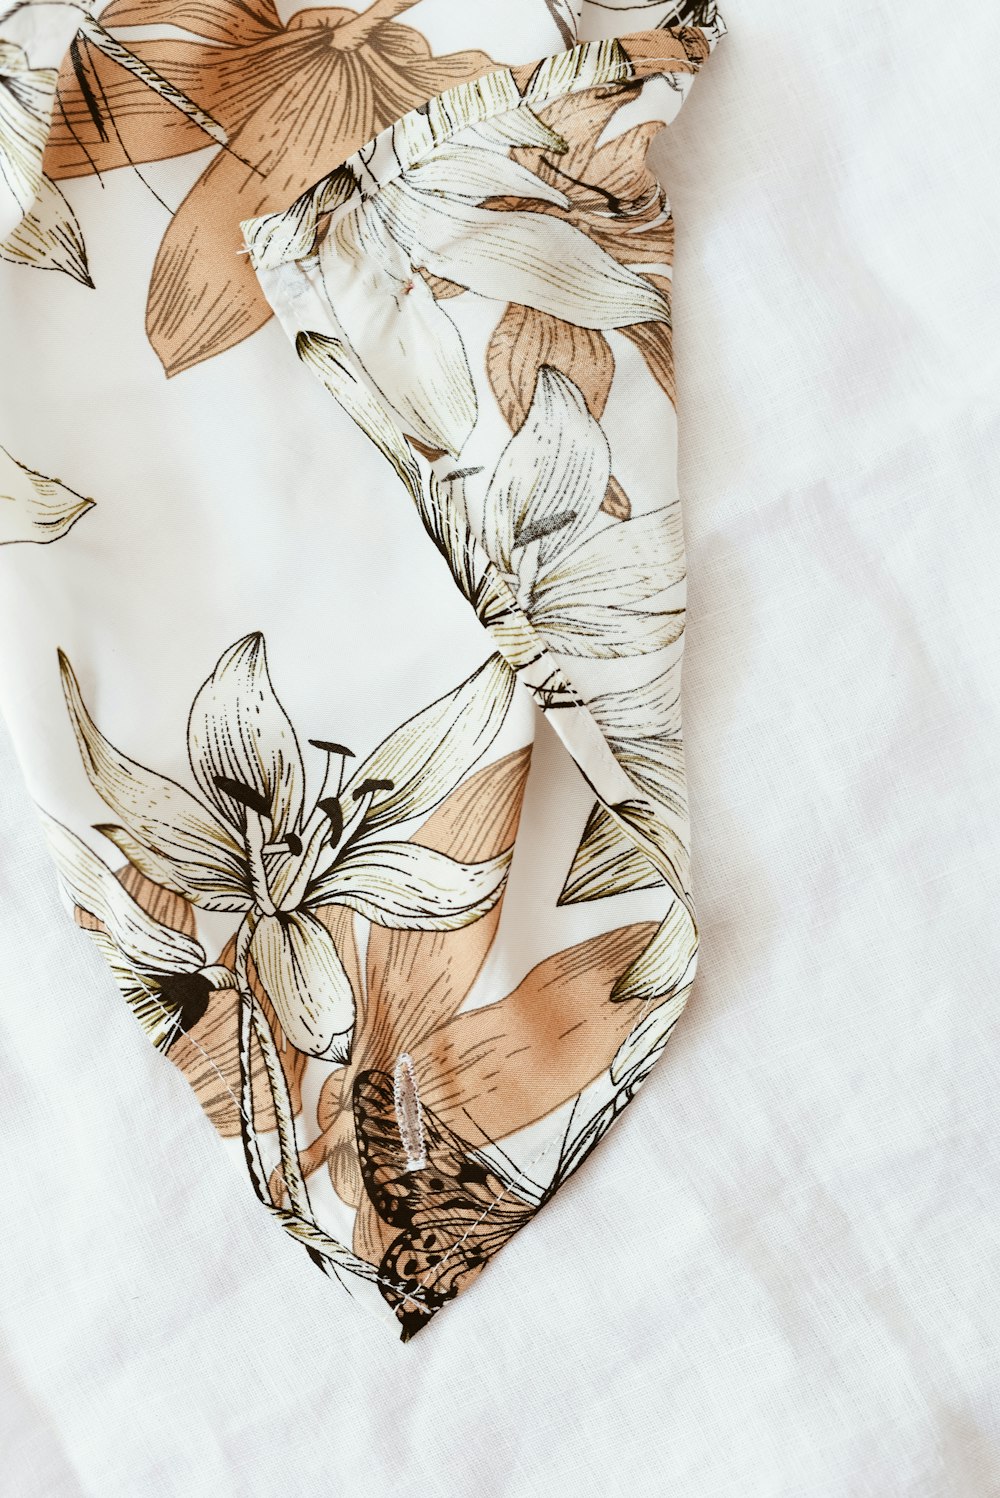 Textil floral blanco y marrón